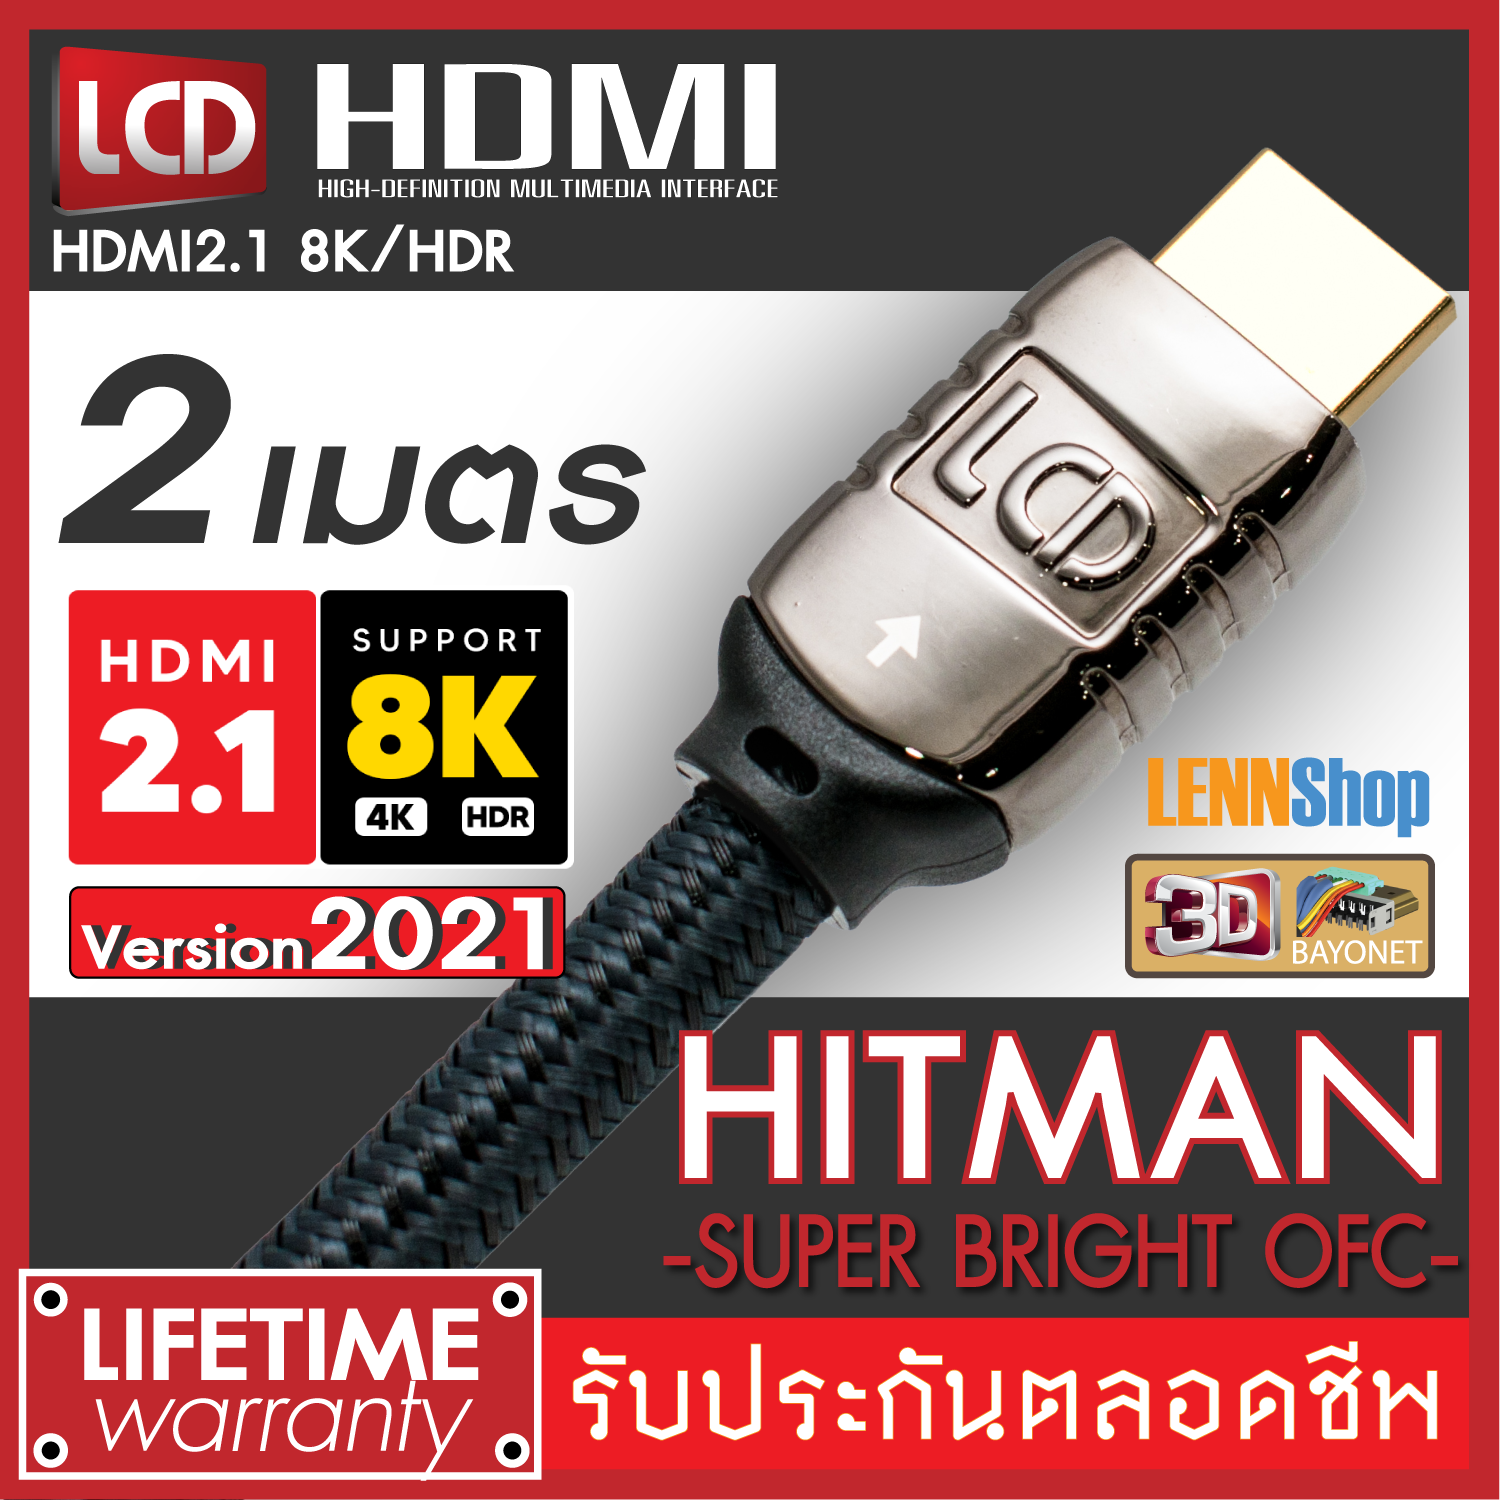 HITMAN 2M HDMI New Version 2021 HDMI OFC ของแท้ 8K/HDR HDMI V2.1 รองรับระบบภาพ 8K/HDR , 3D, ARC, Dolby Vision, H10 ระบบเสียง Dolby Atmos DtsX / ยาว 2 เมตร  / LENNSHOP